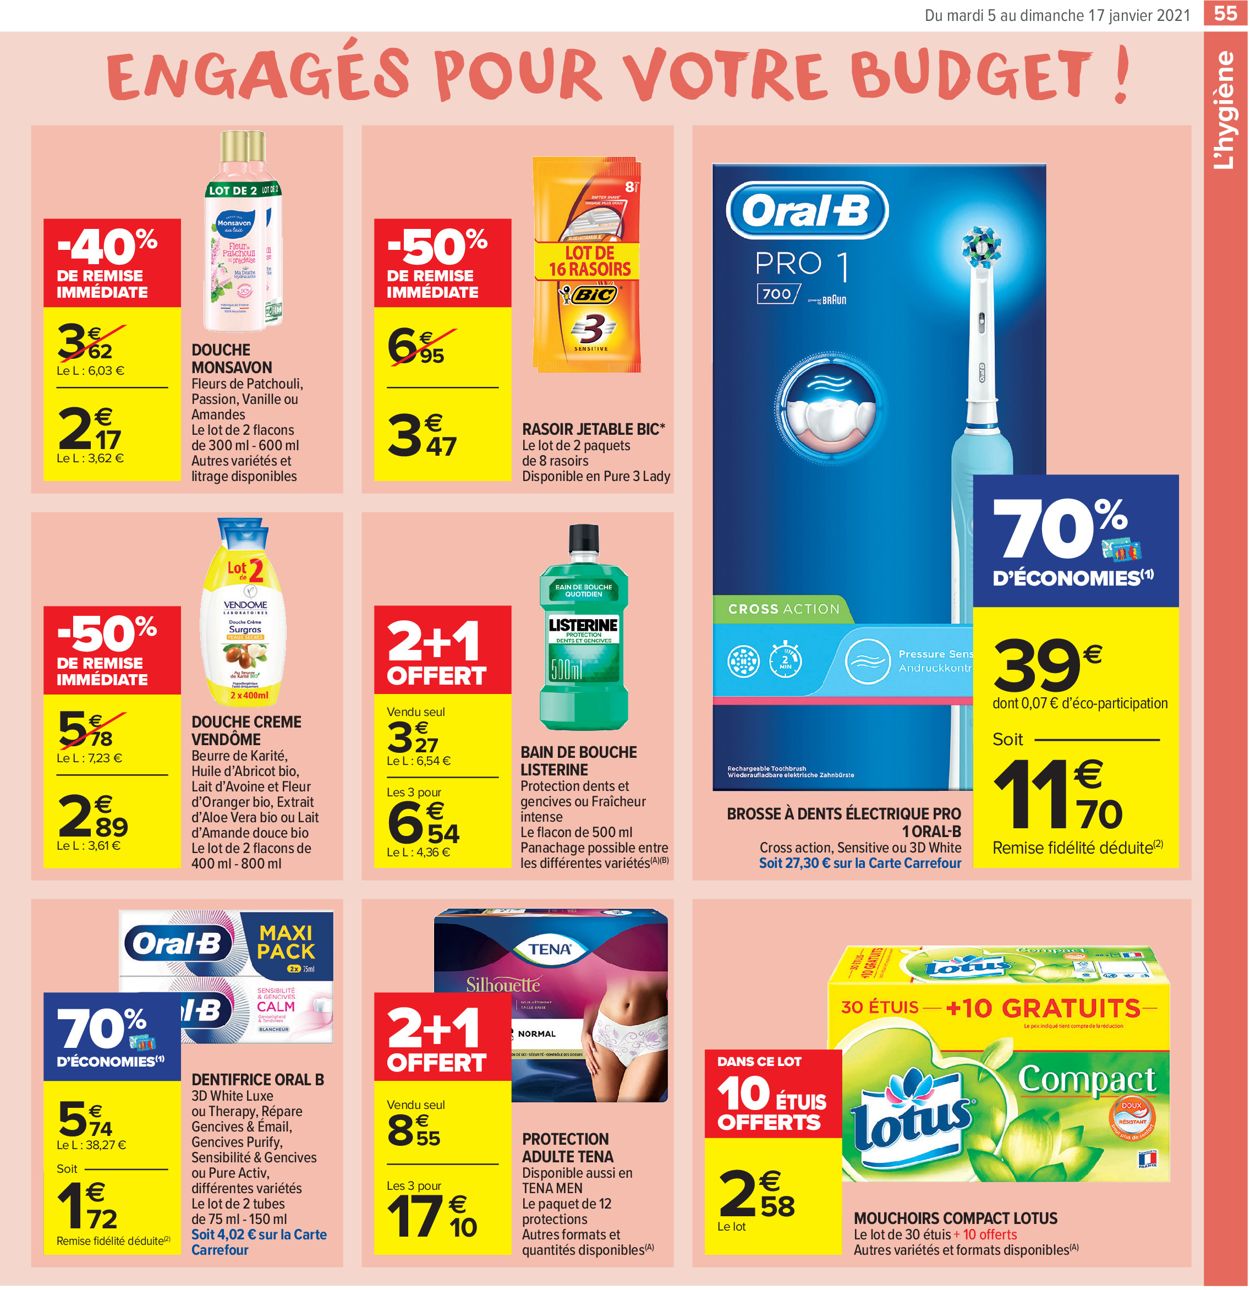 Carrefour Résolument engagés pour votre budget 2021 Catalogue - 05.01-17.01.2021 (Page 55)